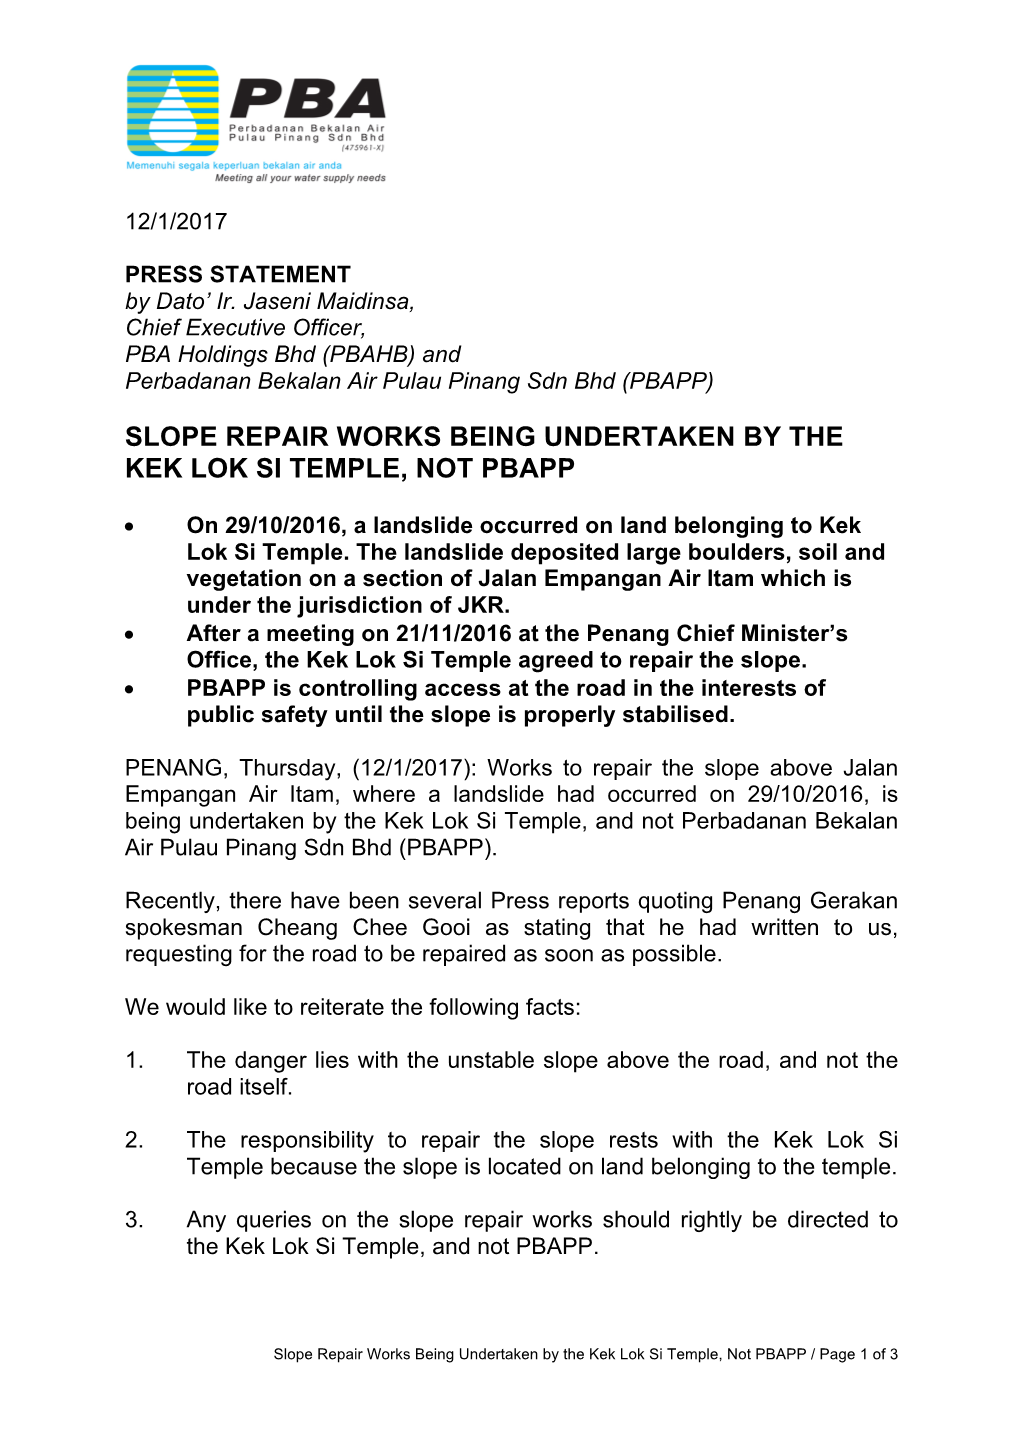 Slope Repair Works Being Undertaken by the Kek Lok Si Temple, Not Pbapp